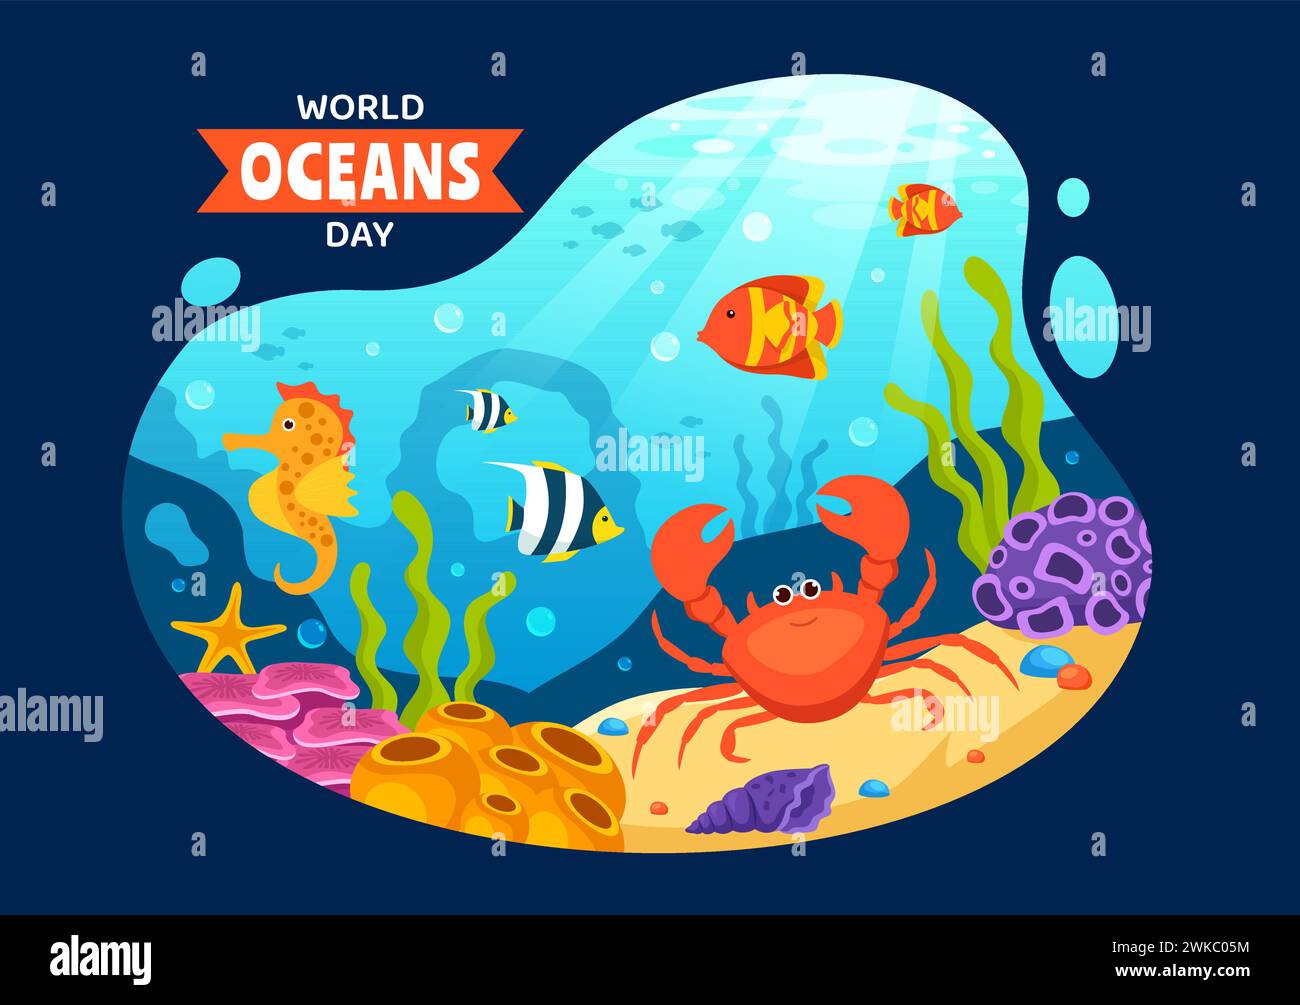 World Oceans Day Vektor Illustration zum Schutz und Erhalt von Ozean, Fisch, Ökosystem oder Meerespflanzen im flachen Cartoon Hintergrund Design Stock Vektor